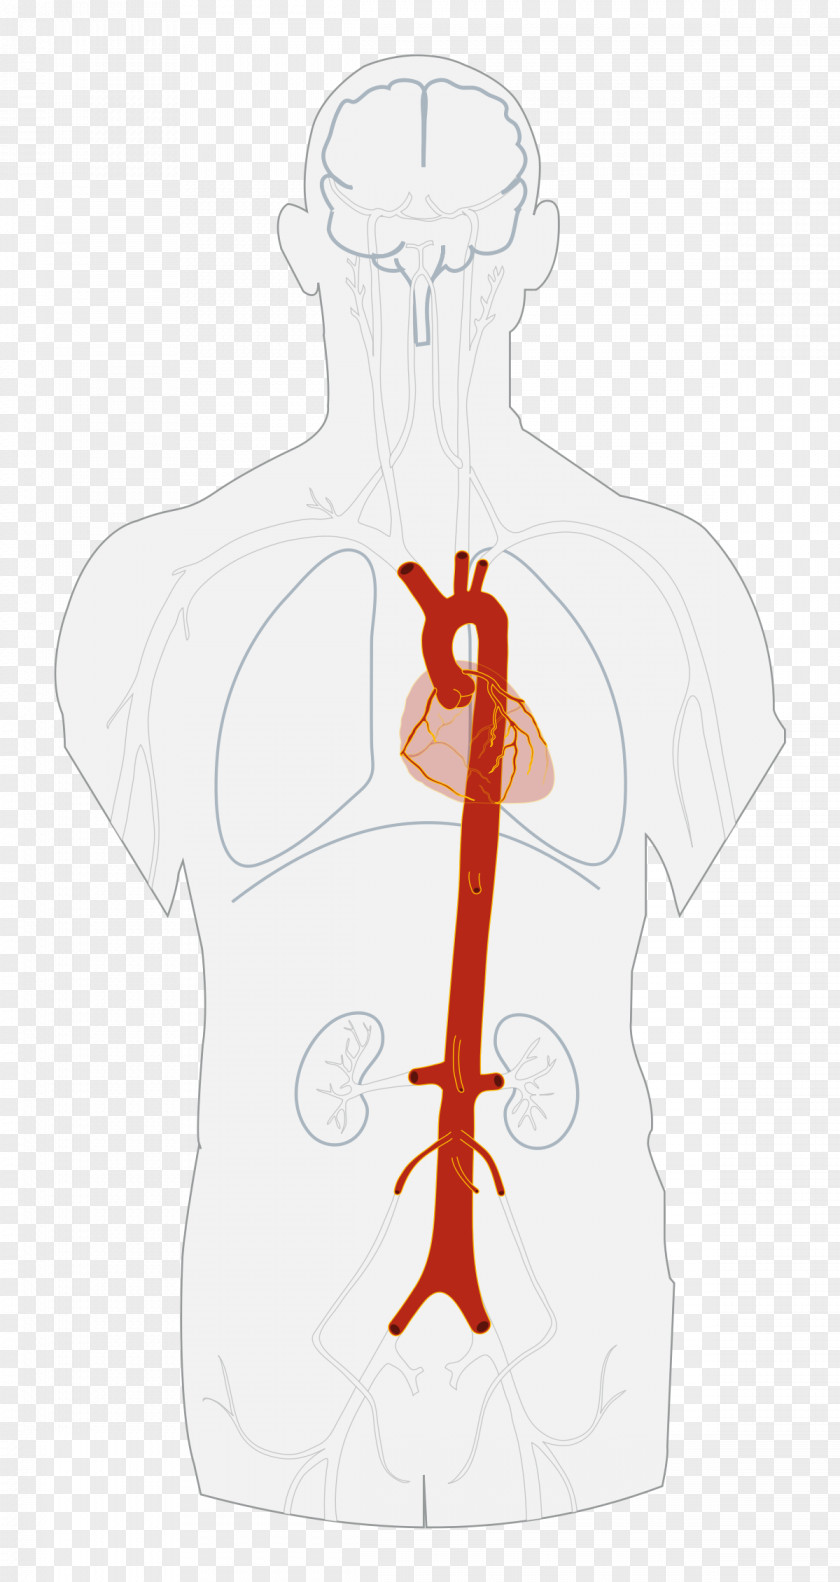 Abdominal Descending Aorta Artery Heart PNG